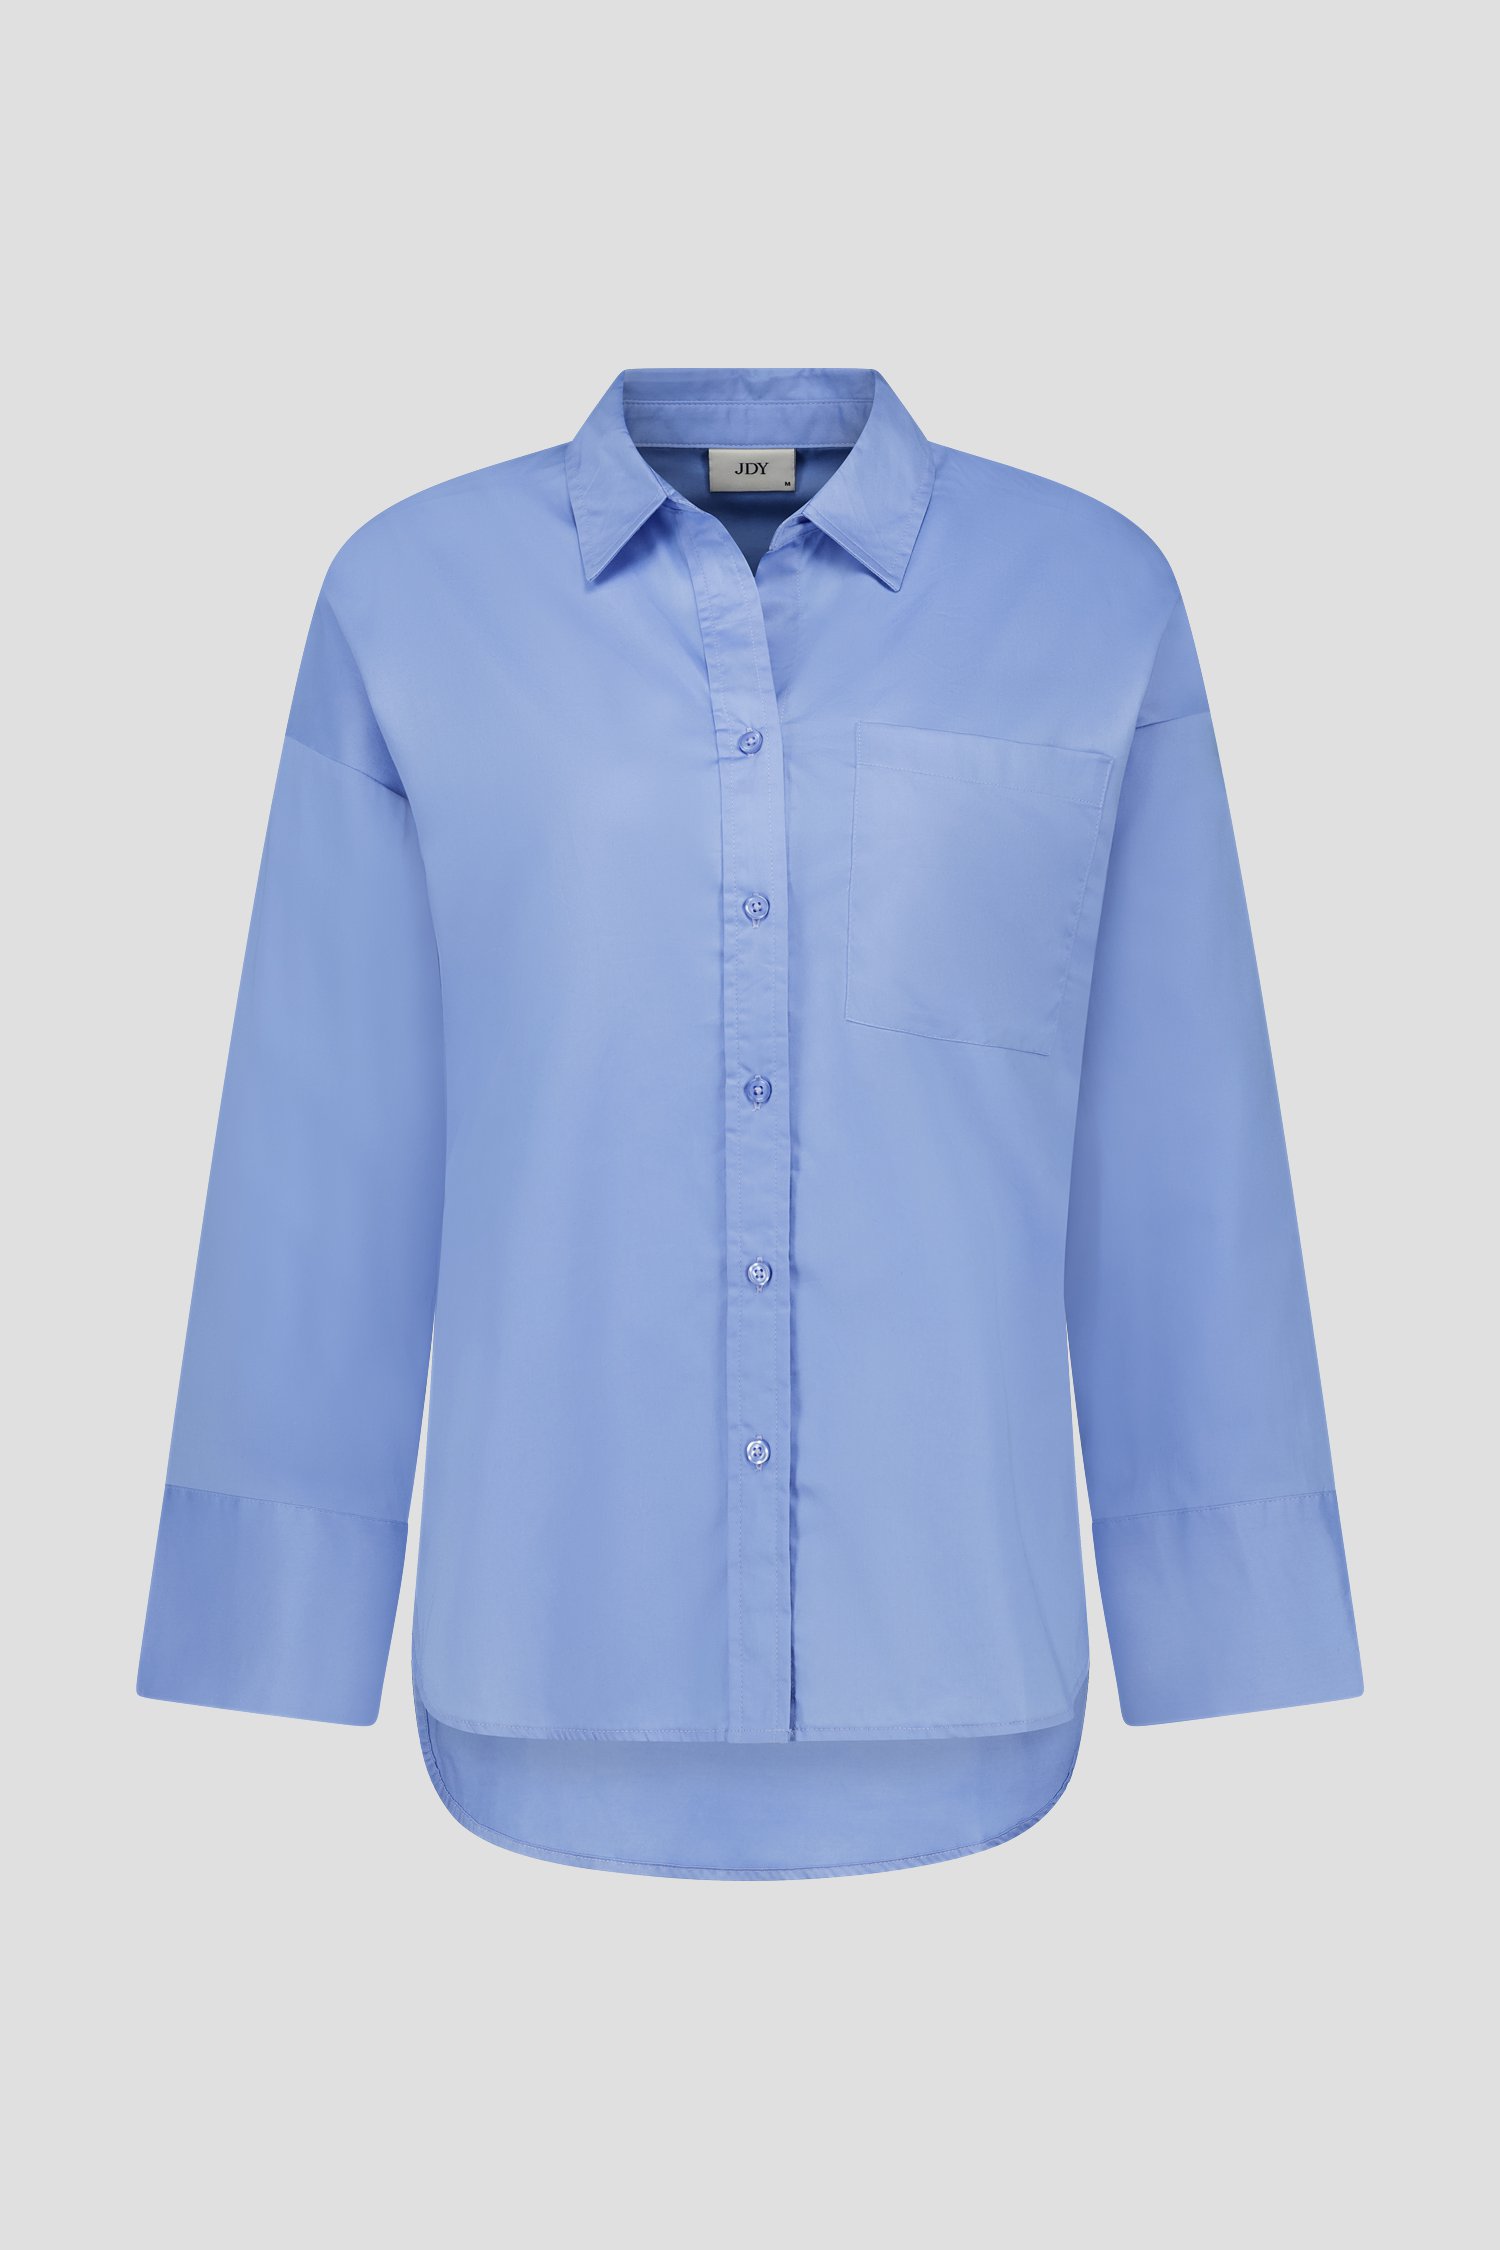 Lichtblauwe blouse van JDY voor Dames